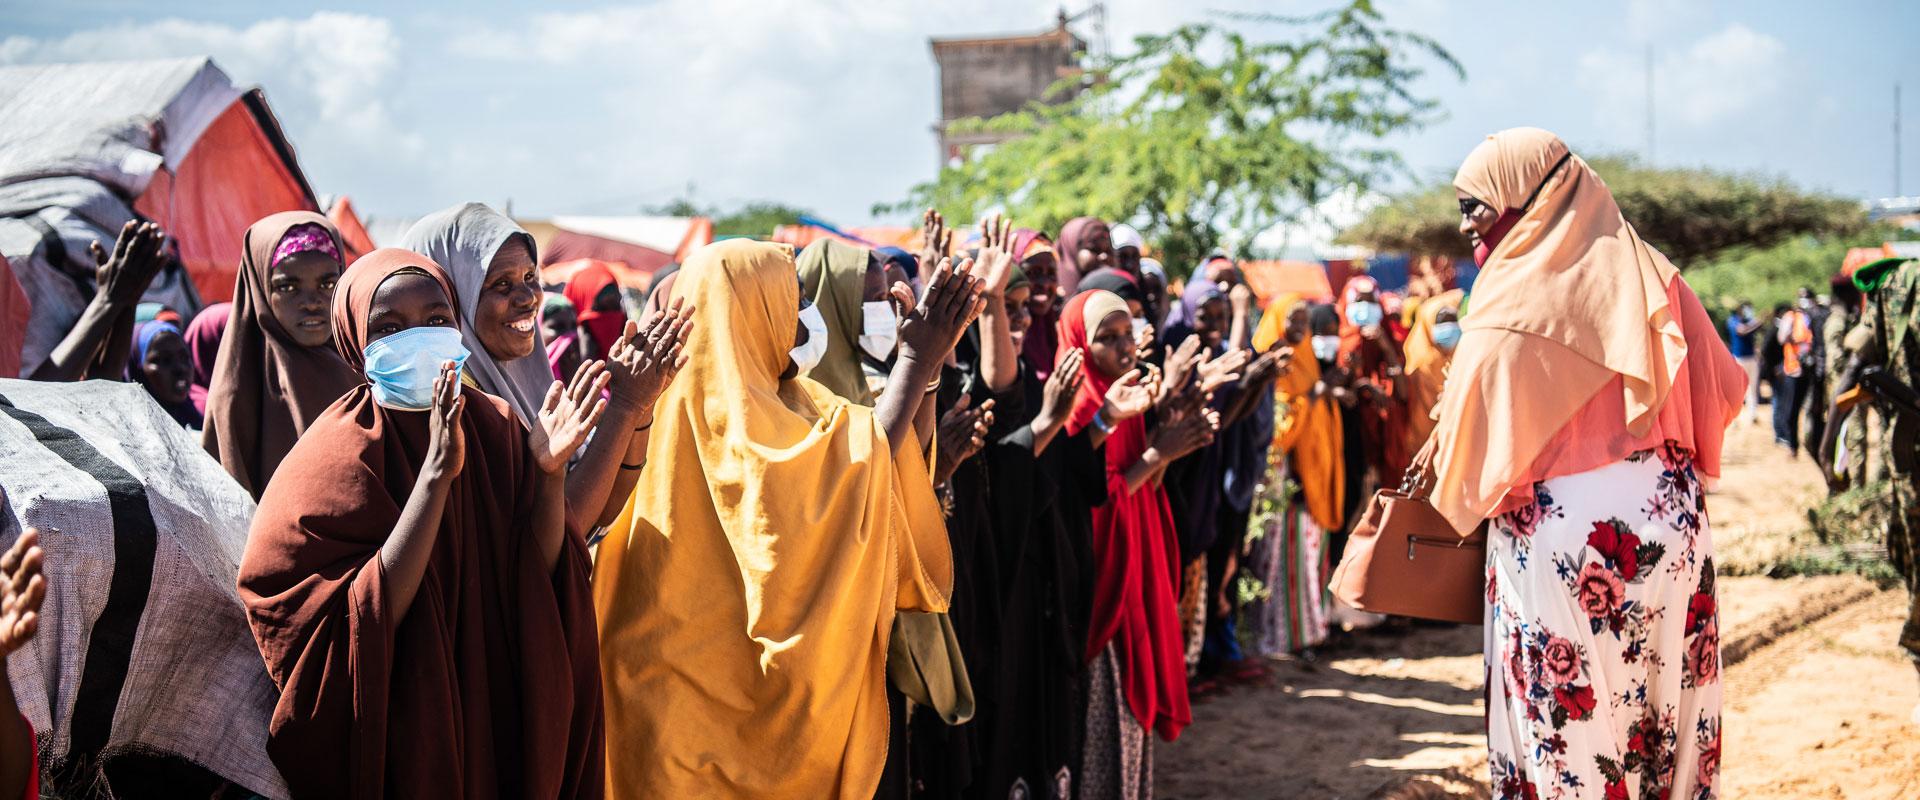 Mujeres en Somalia brindan justicia a supervivientes de violencia de género